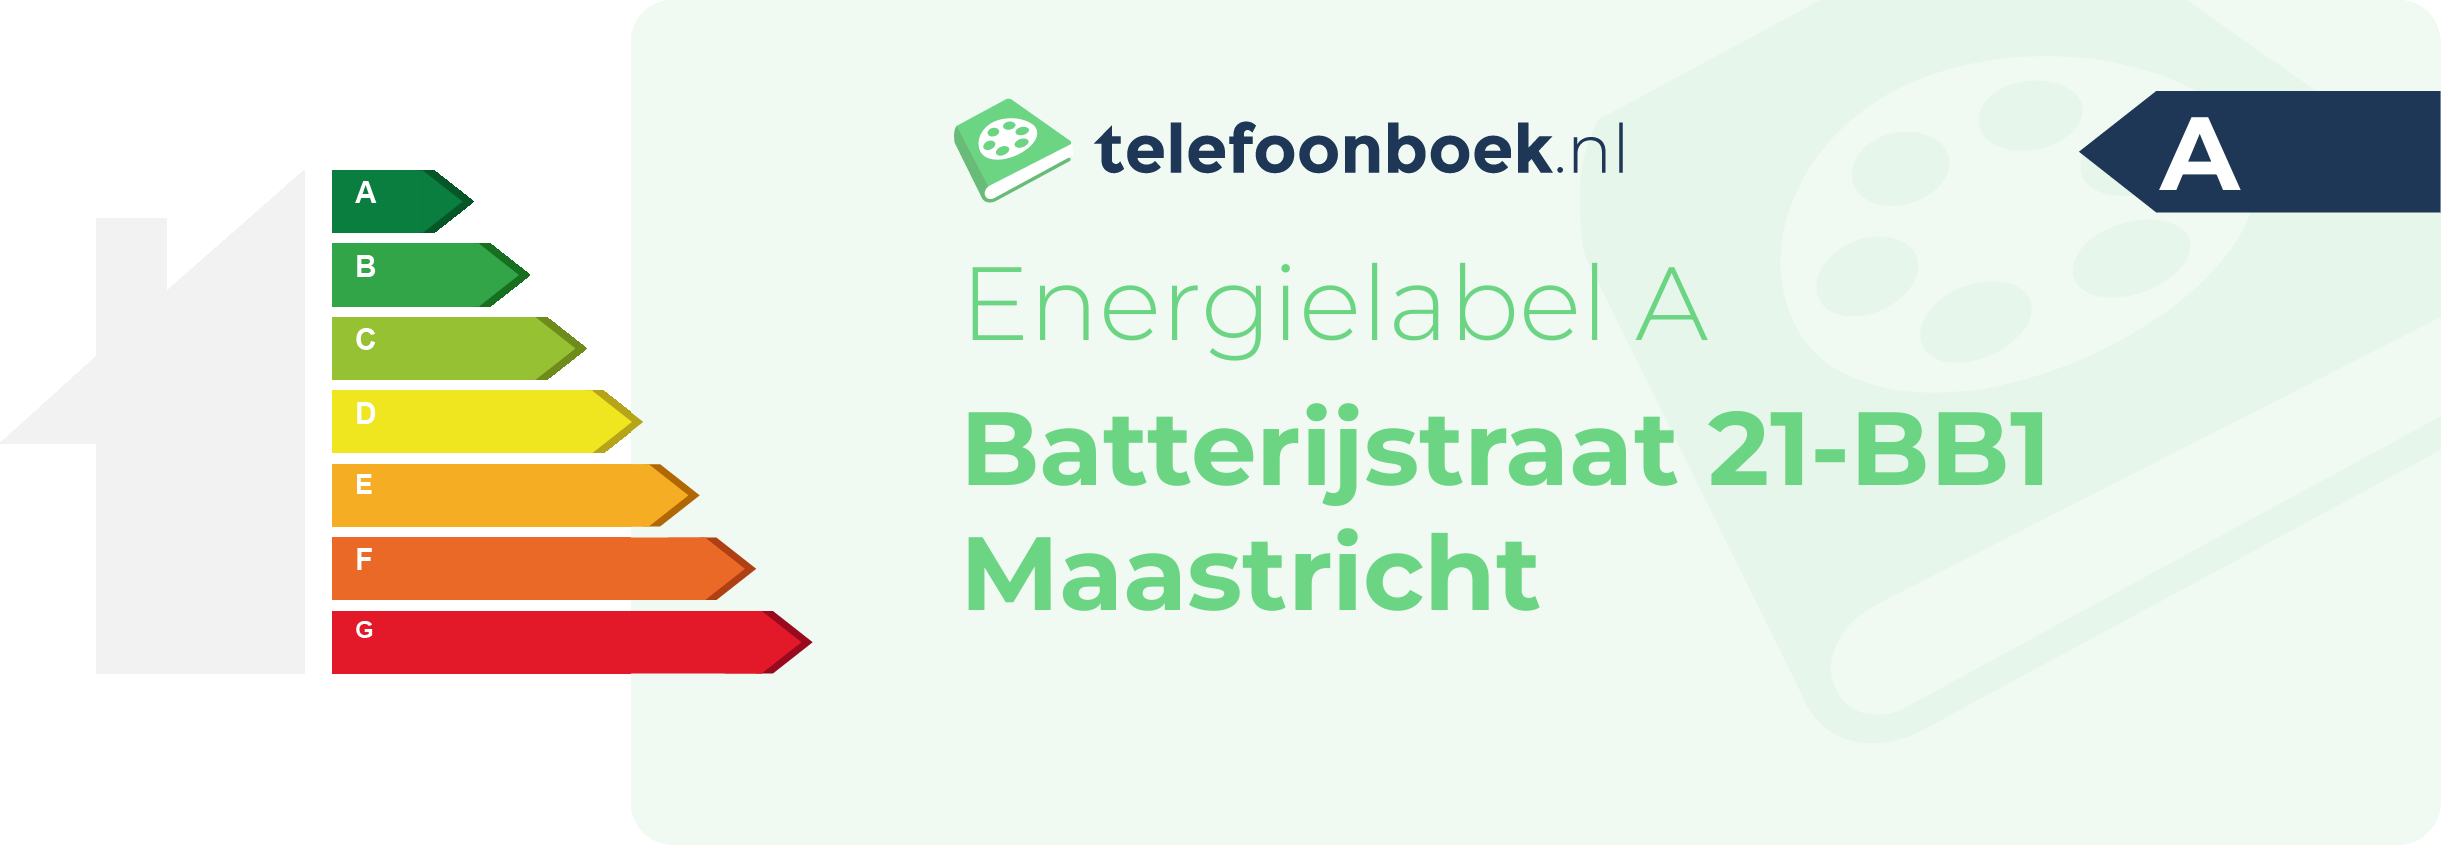 Energielabel Batterijstraat 21-BB1 Maastricht